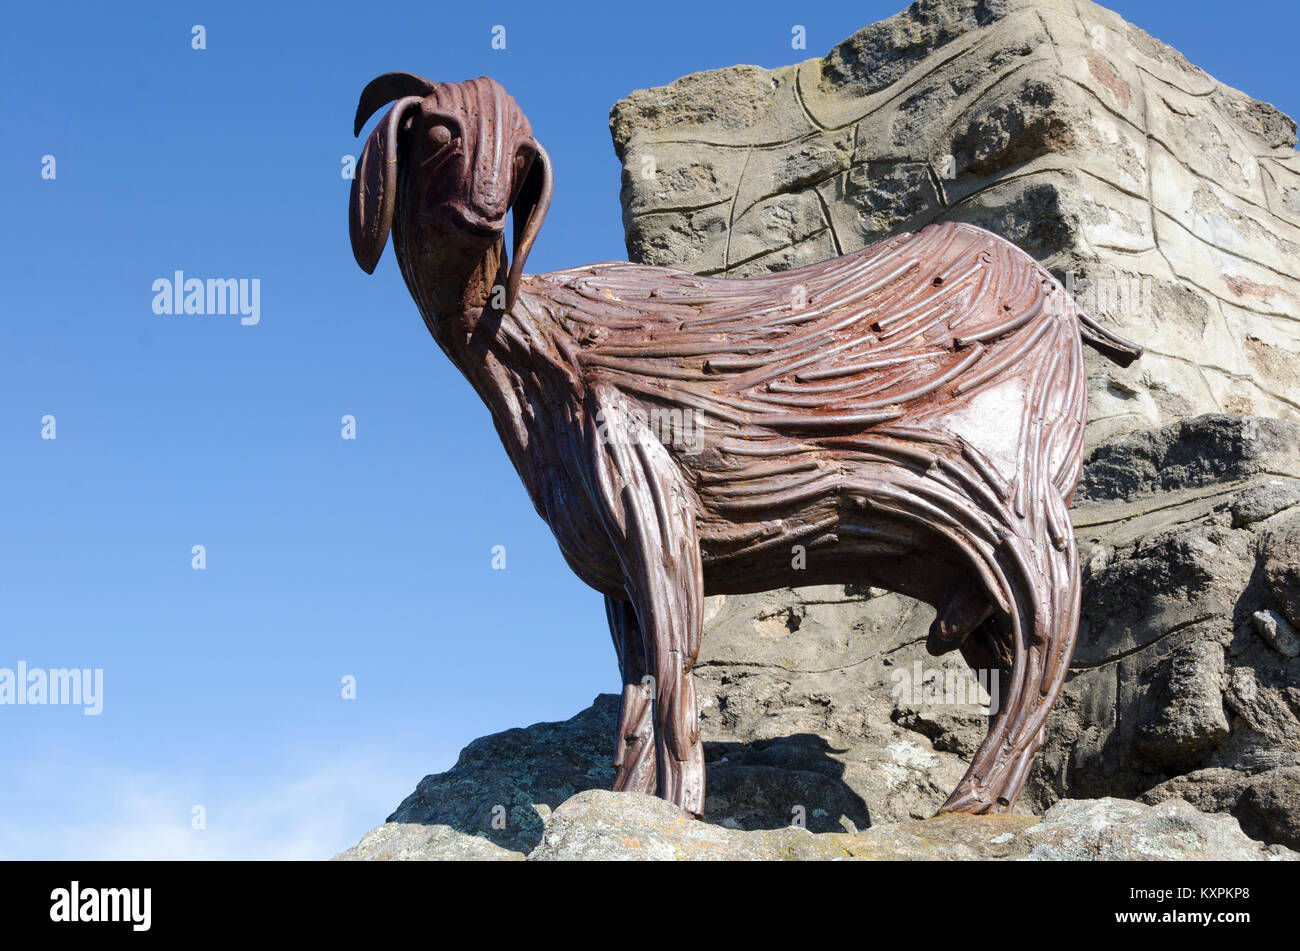 Bronzestatue einer Ziege, Ziege Hill, Cooma, New South Wales, Australien Stockfoto